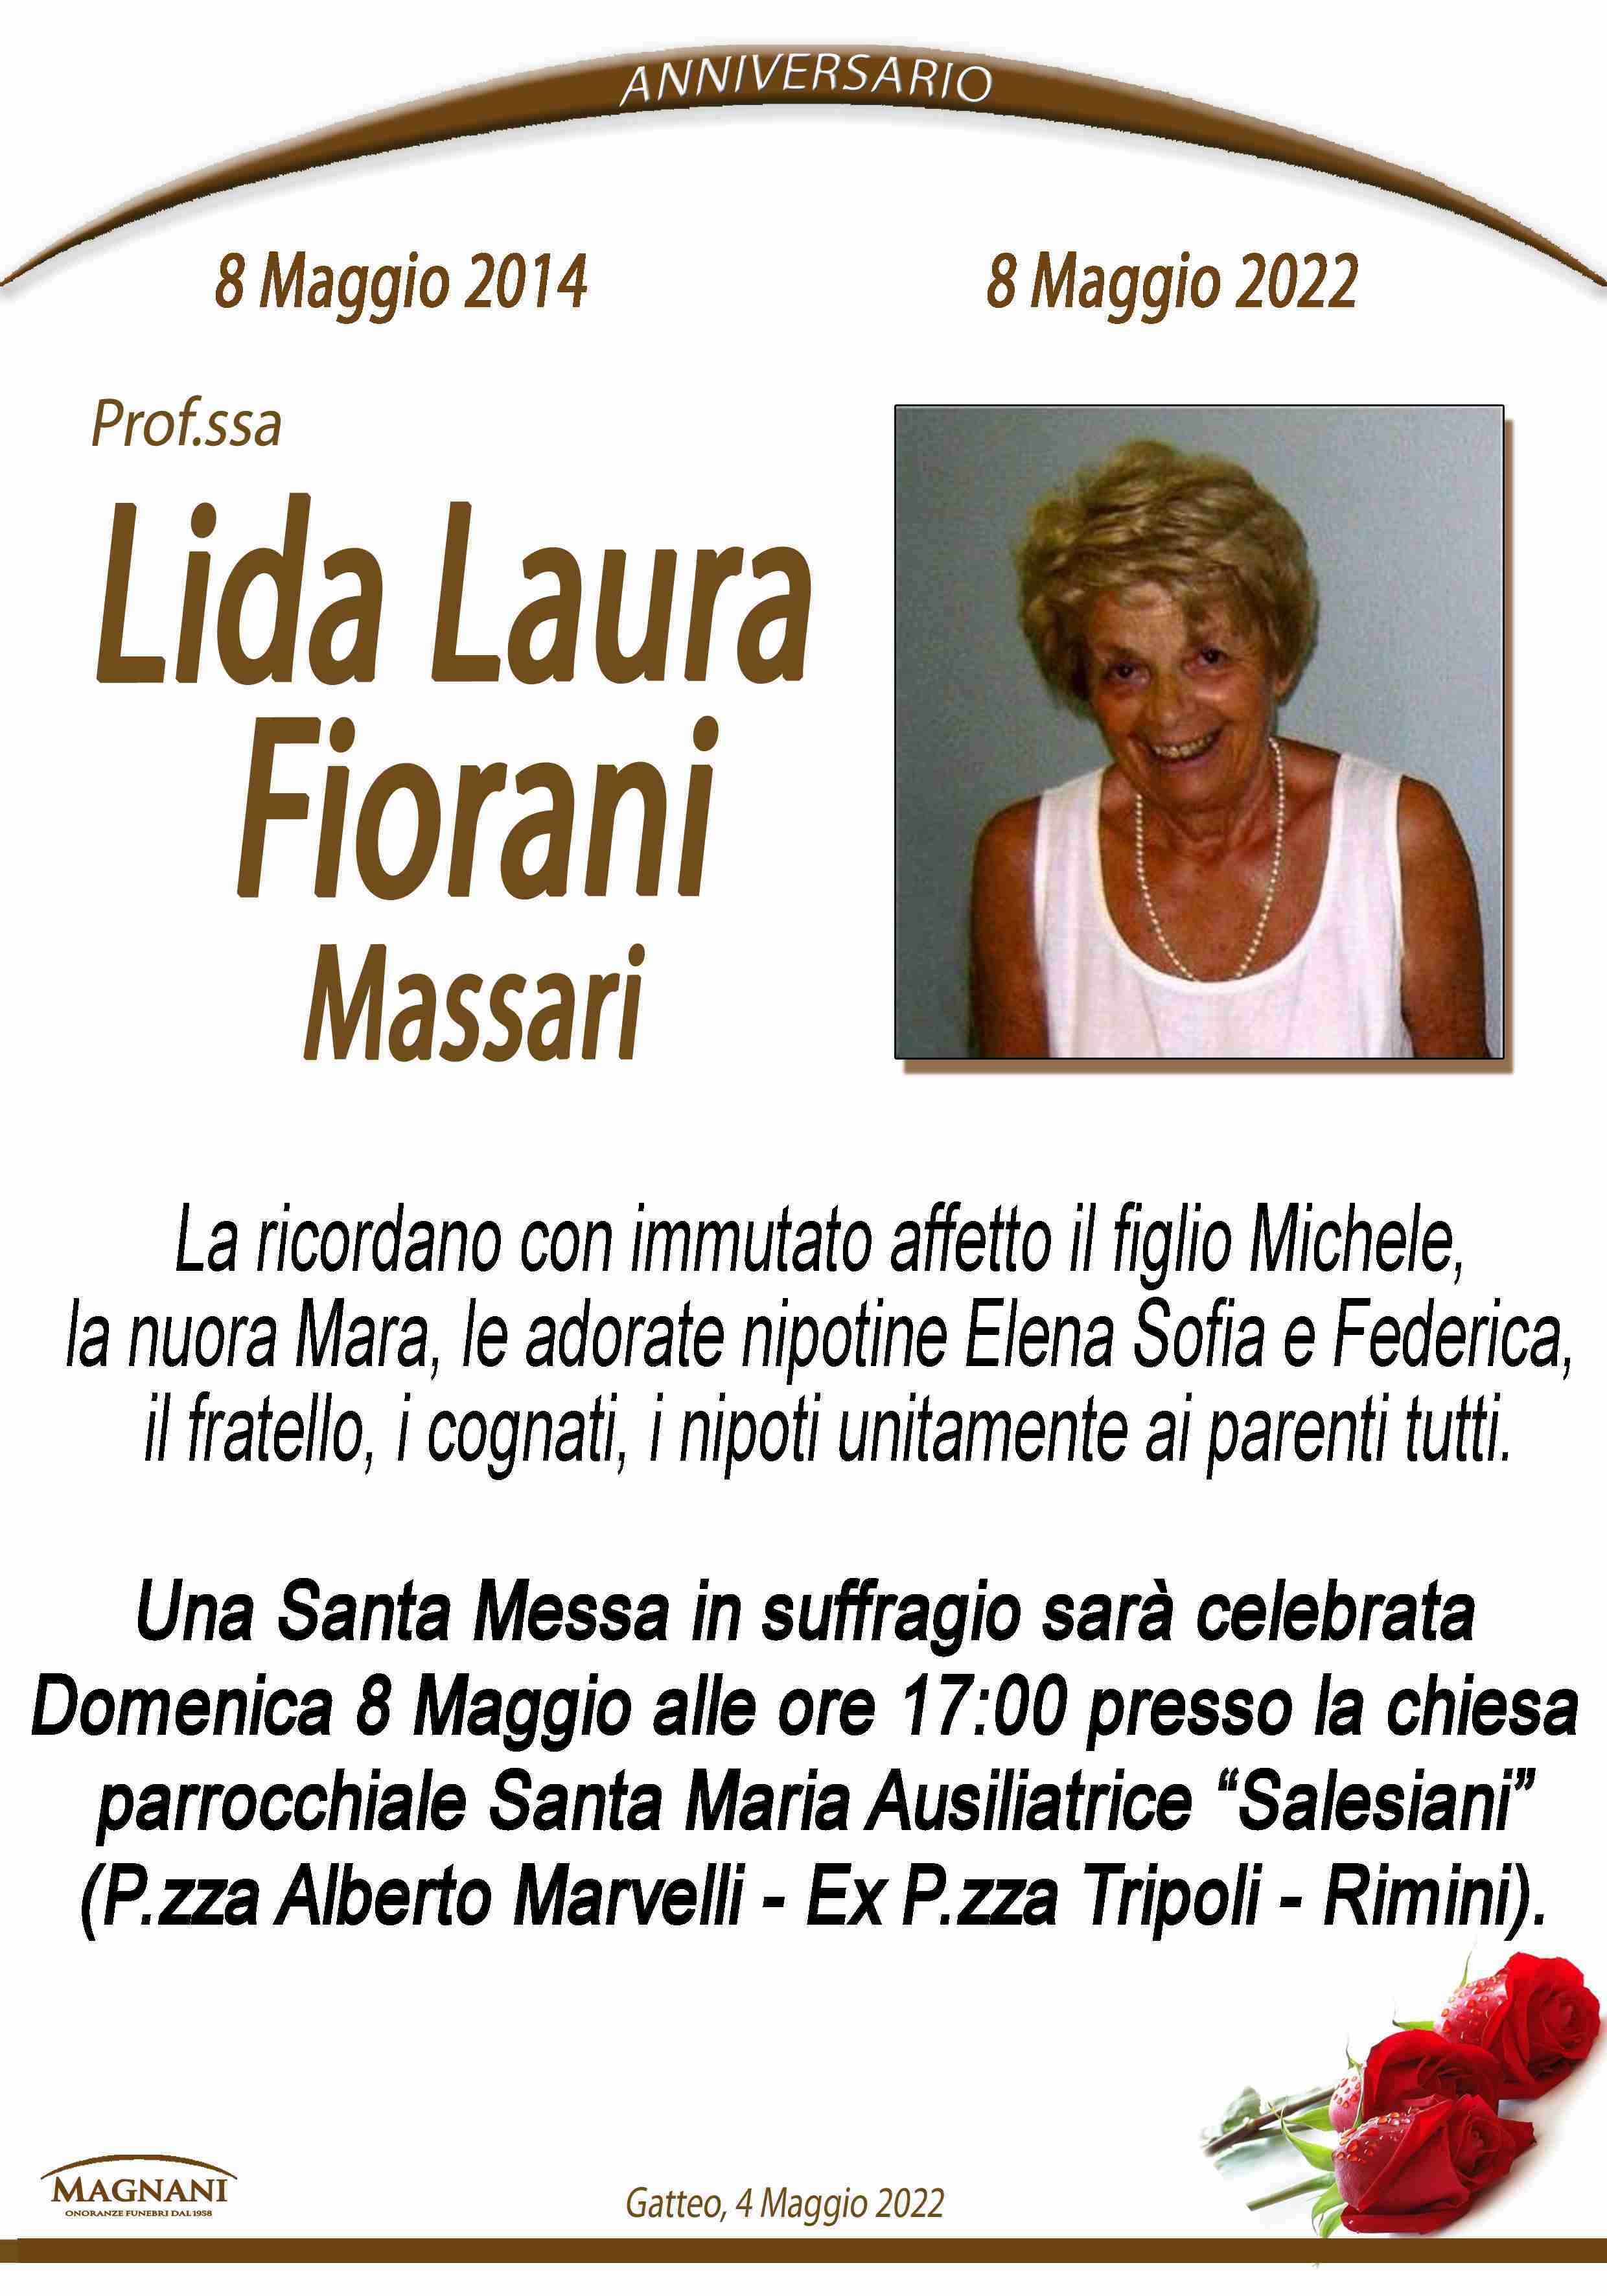 Lida Laura Fiorani Massari